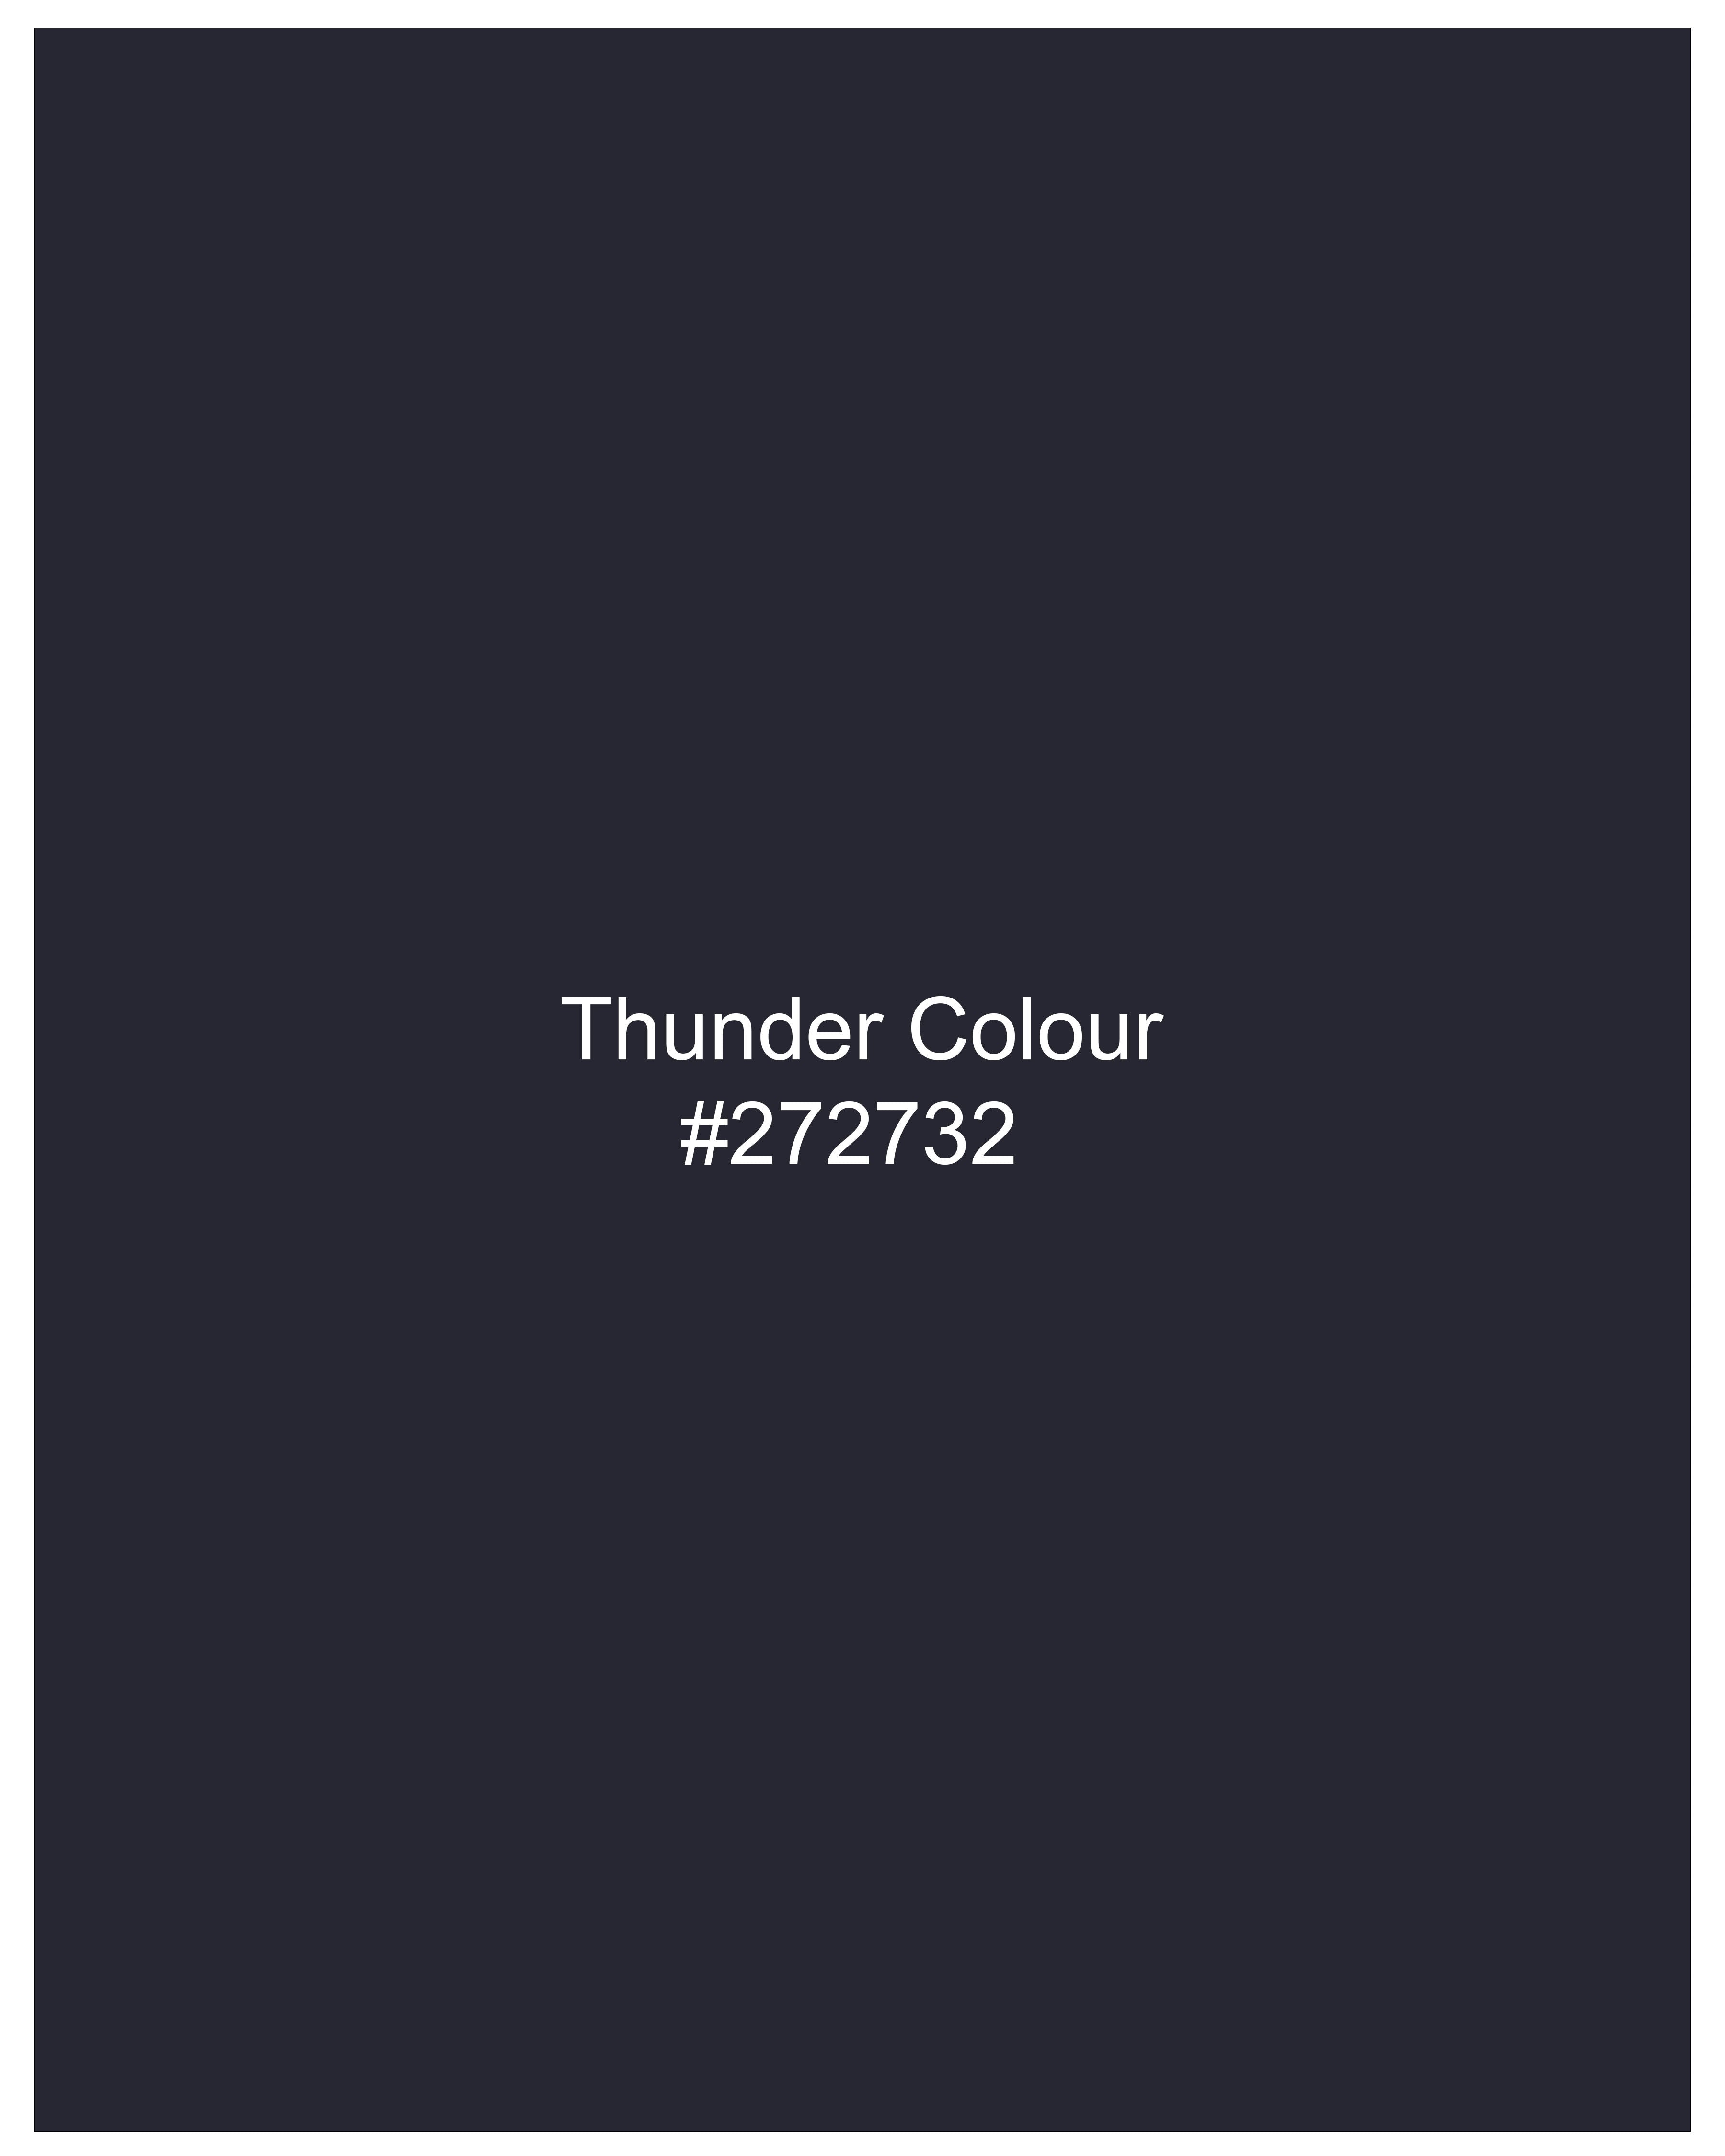 Thunder Blue Designer Waistcoat V2541-36, V2541-38, V2541-40, V2541-42, V2541-44, V2541-46, V2541-48, V2541-50, V2541-54, V2541-54, V2541-56, V2541-58, V2541-60